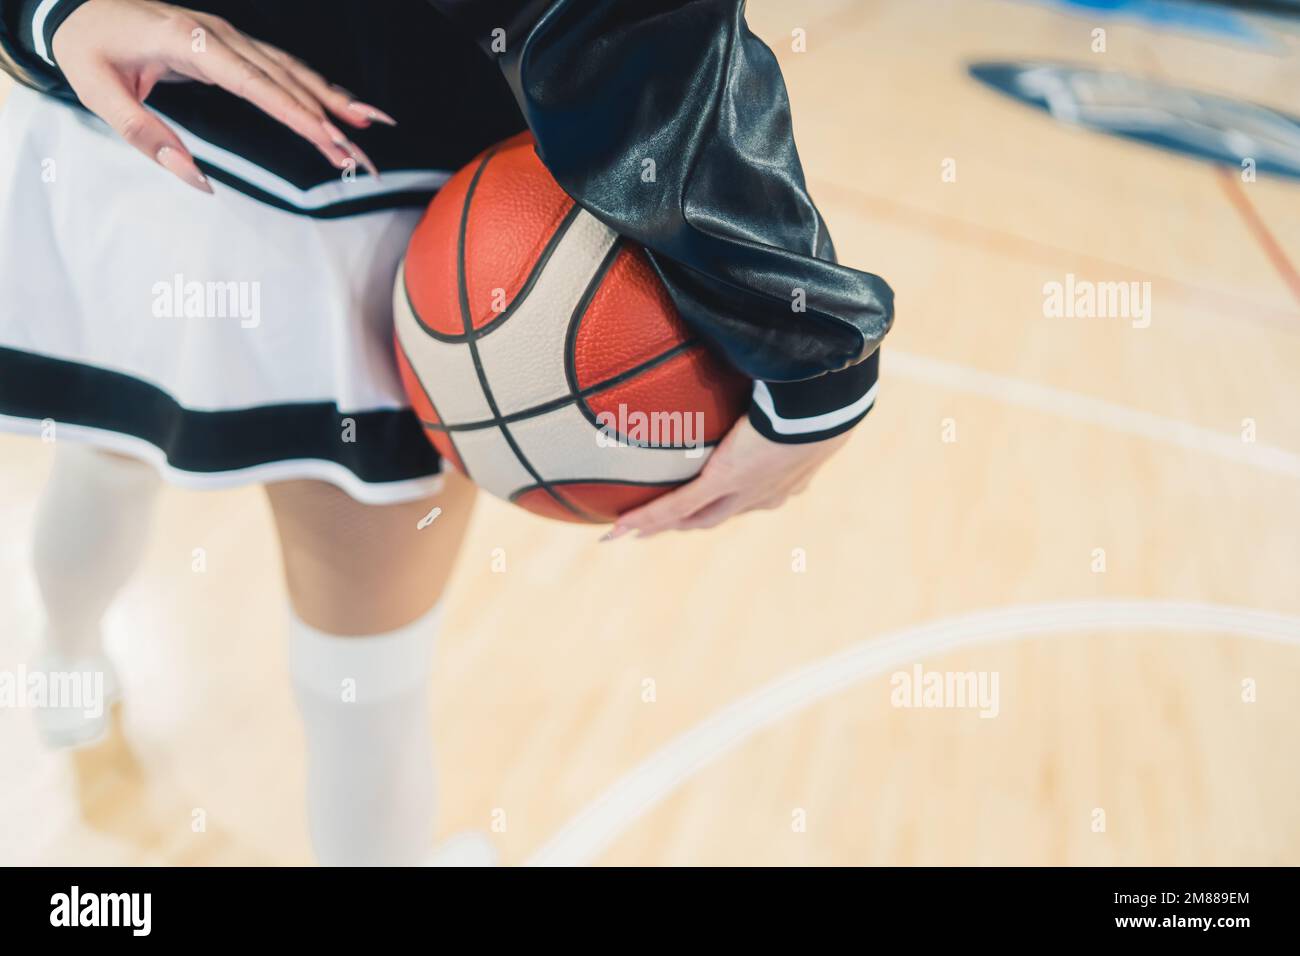 La moitié inférieure d'une meneuse, vêtue d'une mini-jupe ludique, comme  elle tient un basket-ball dans ses mains. Ses jambes sont au centre de la  scène, mettant en valeur son physique tonique et